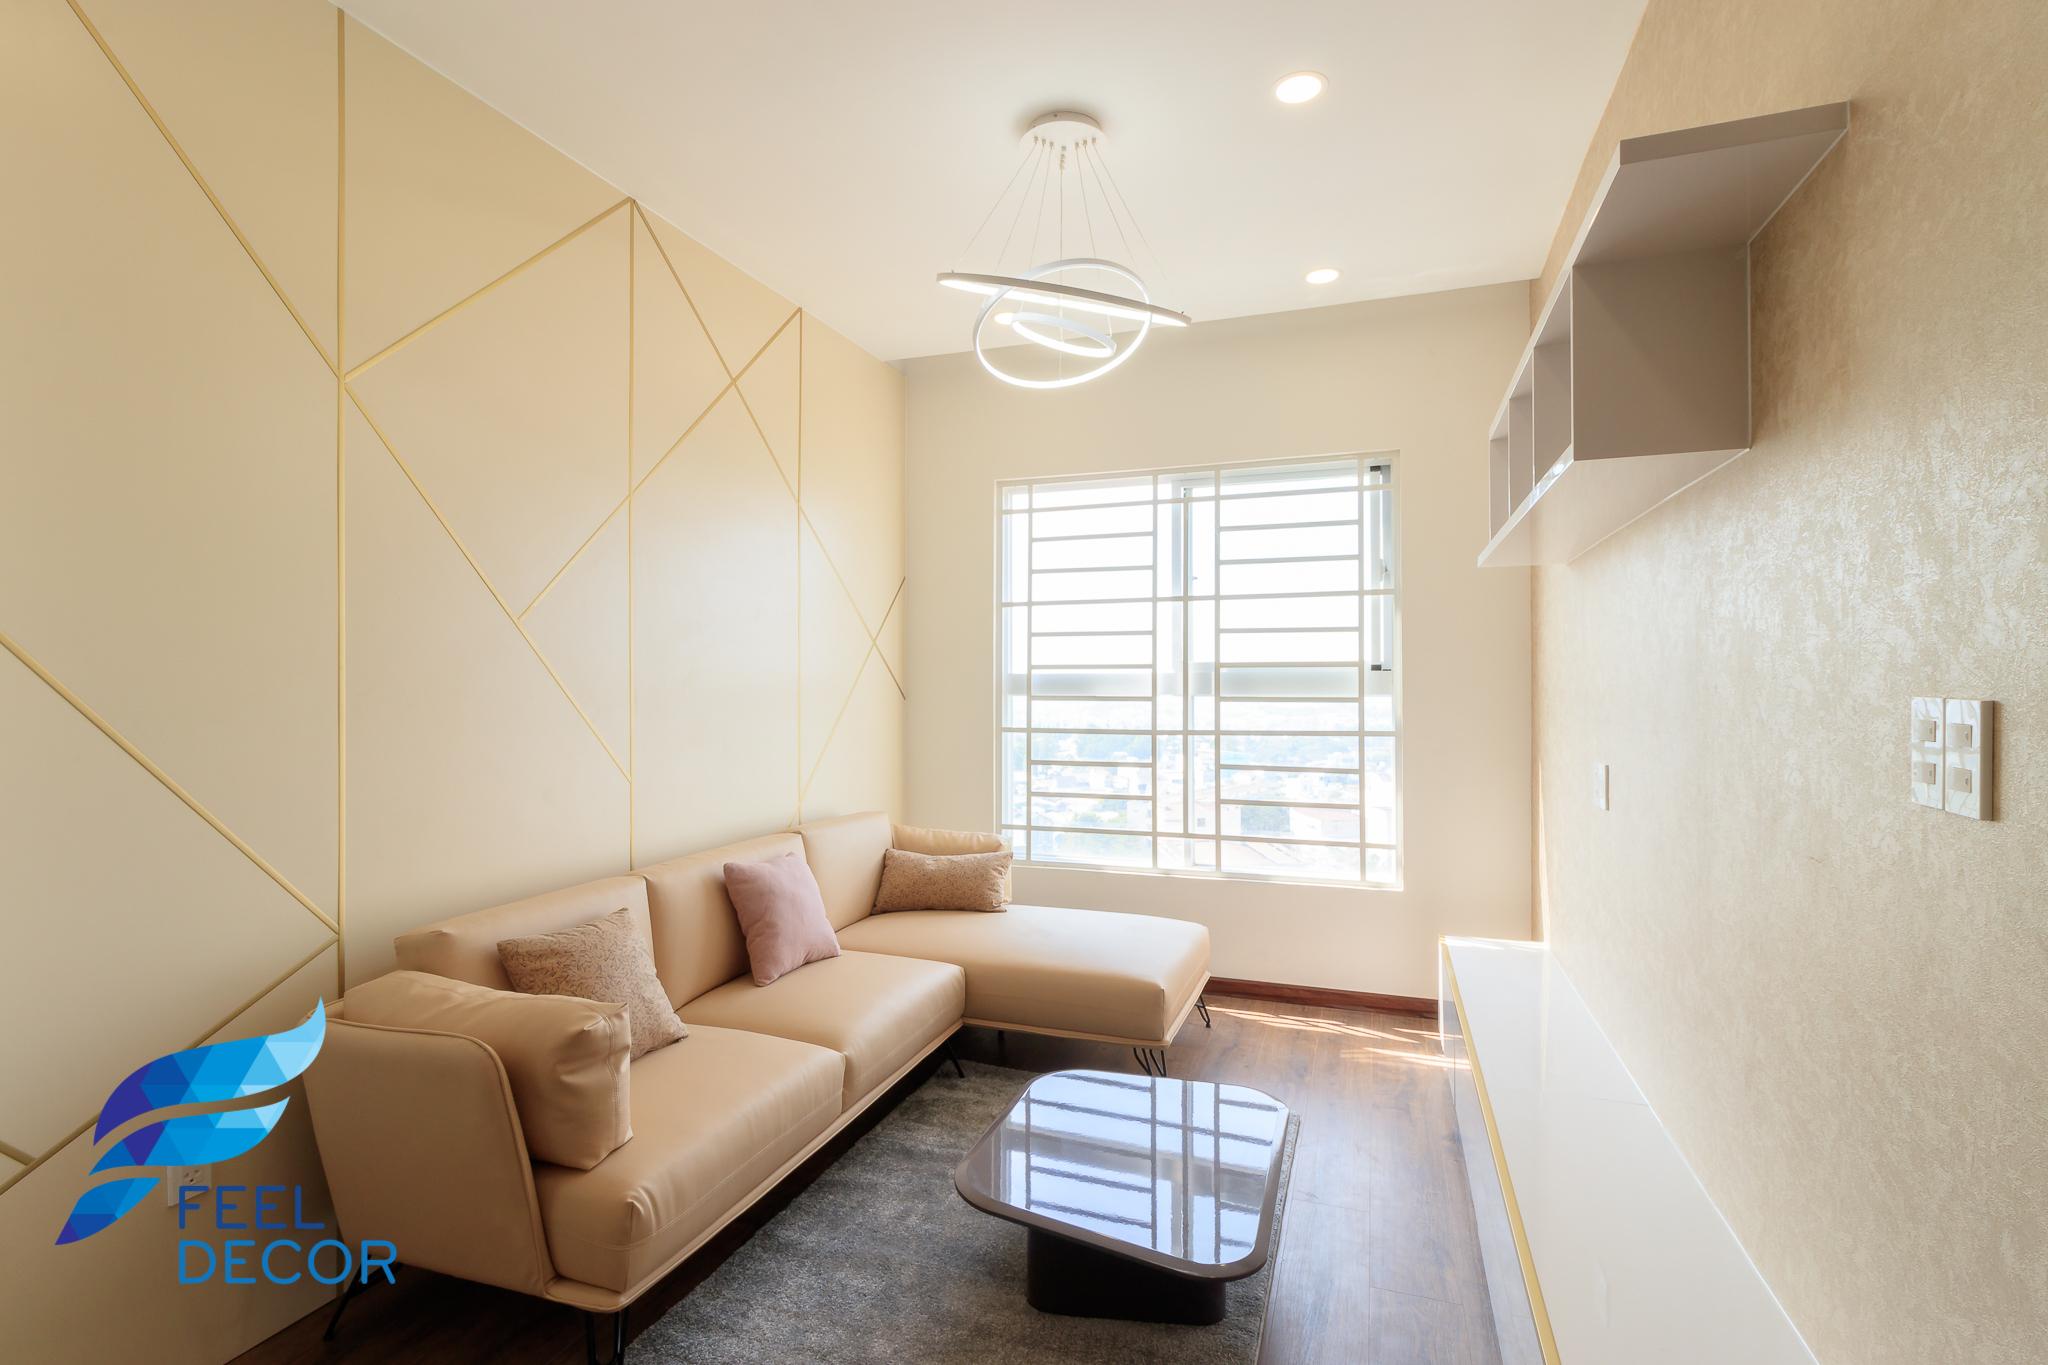 Hình ảnh thực tế thiết kế nội thất căn hộ 2 phòng ngủ (71m2) ở Biên Hòa - FD11618